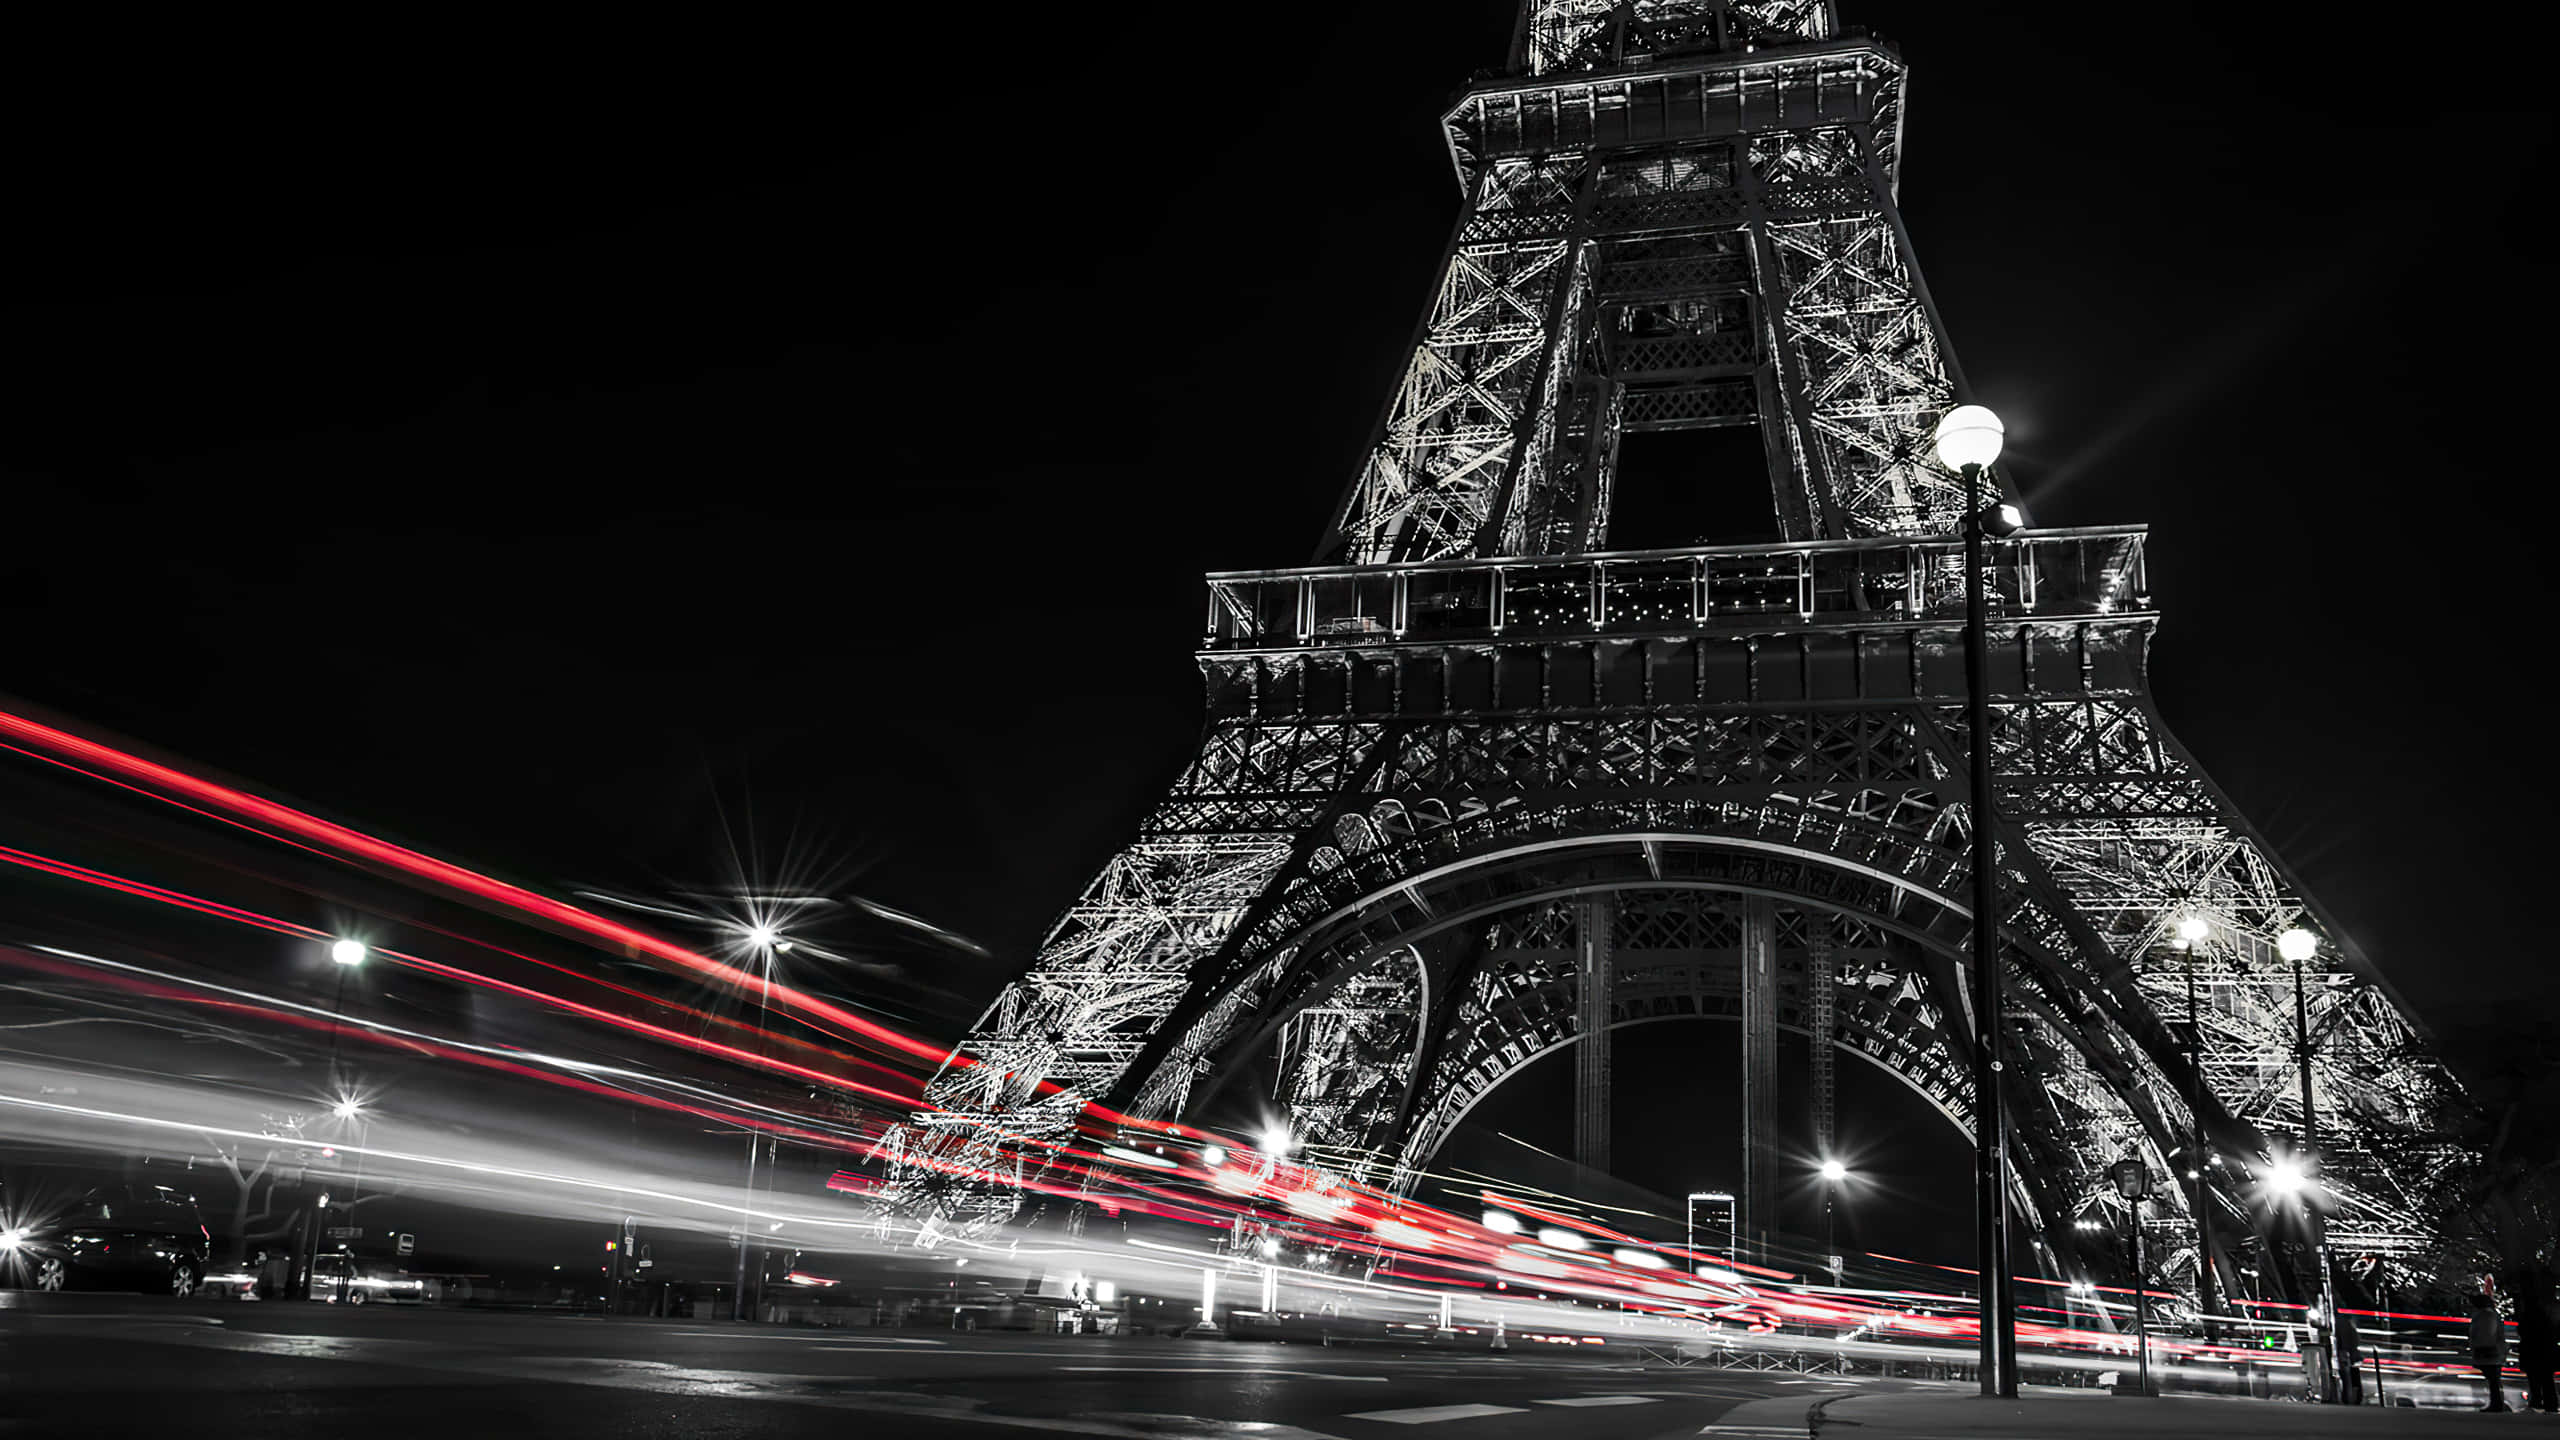 Ivisitatori Godono Della Vista Unica E Romantica Della Torre Eiffel Di Notte.